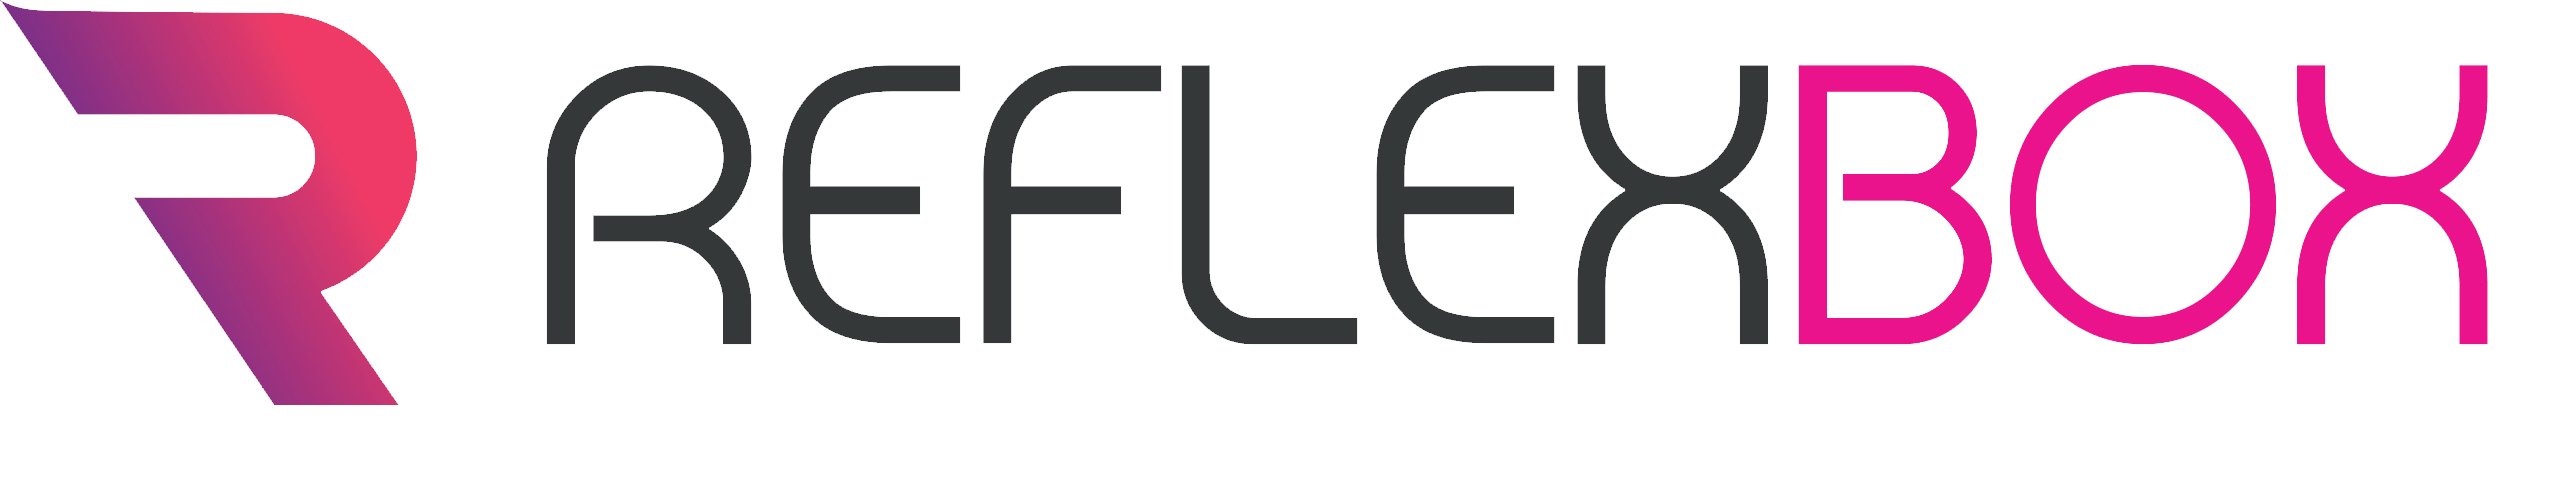 REFLEXBOX_logo